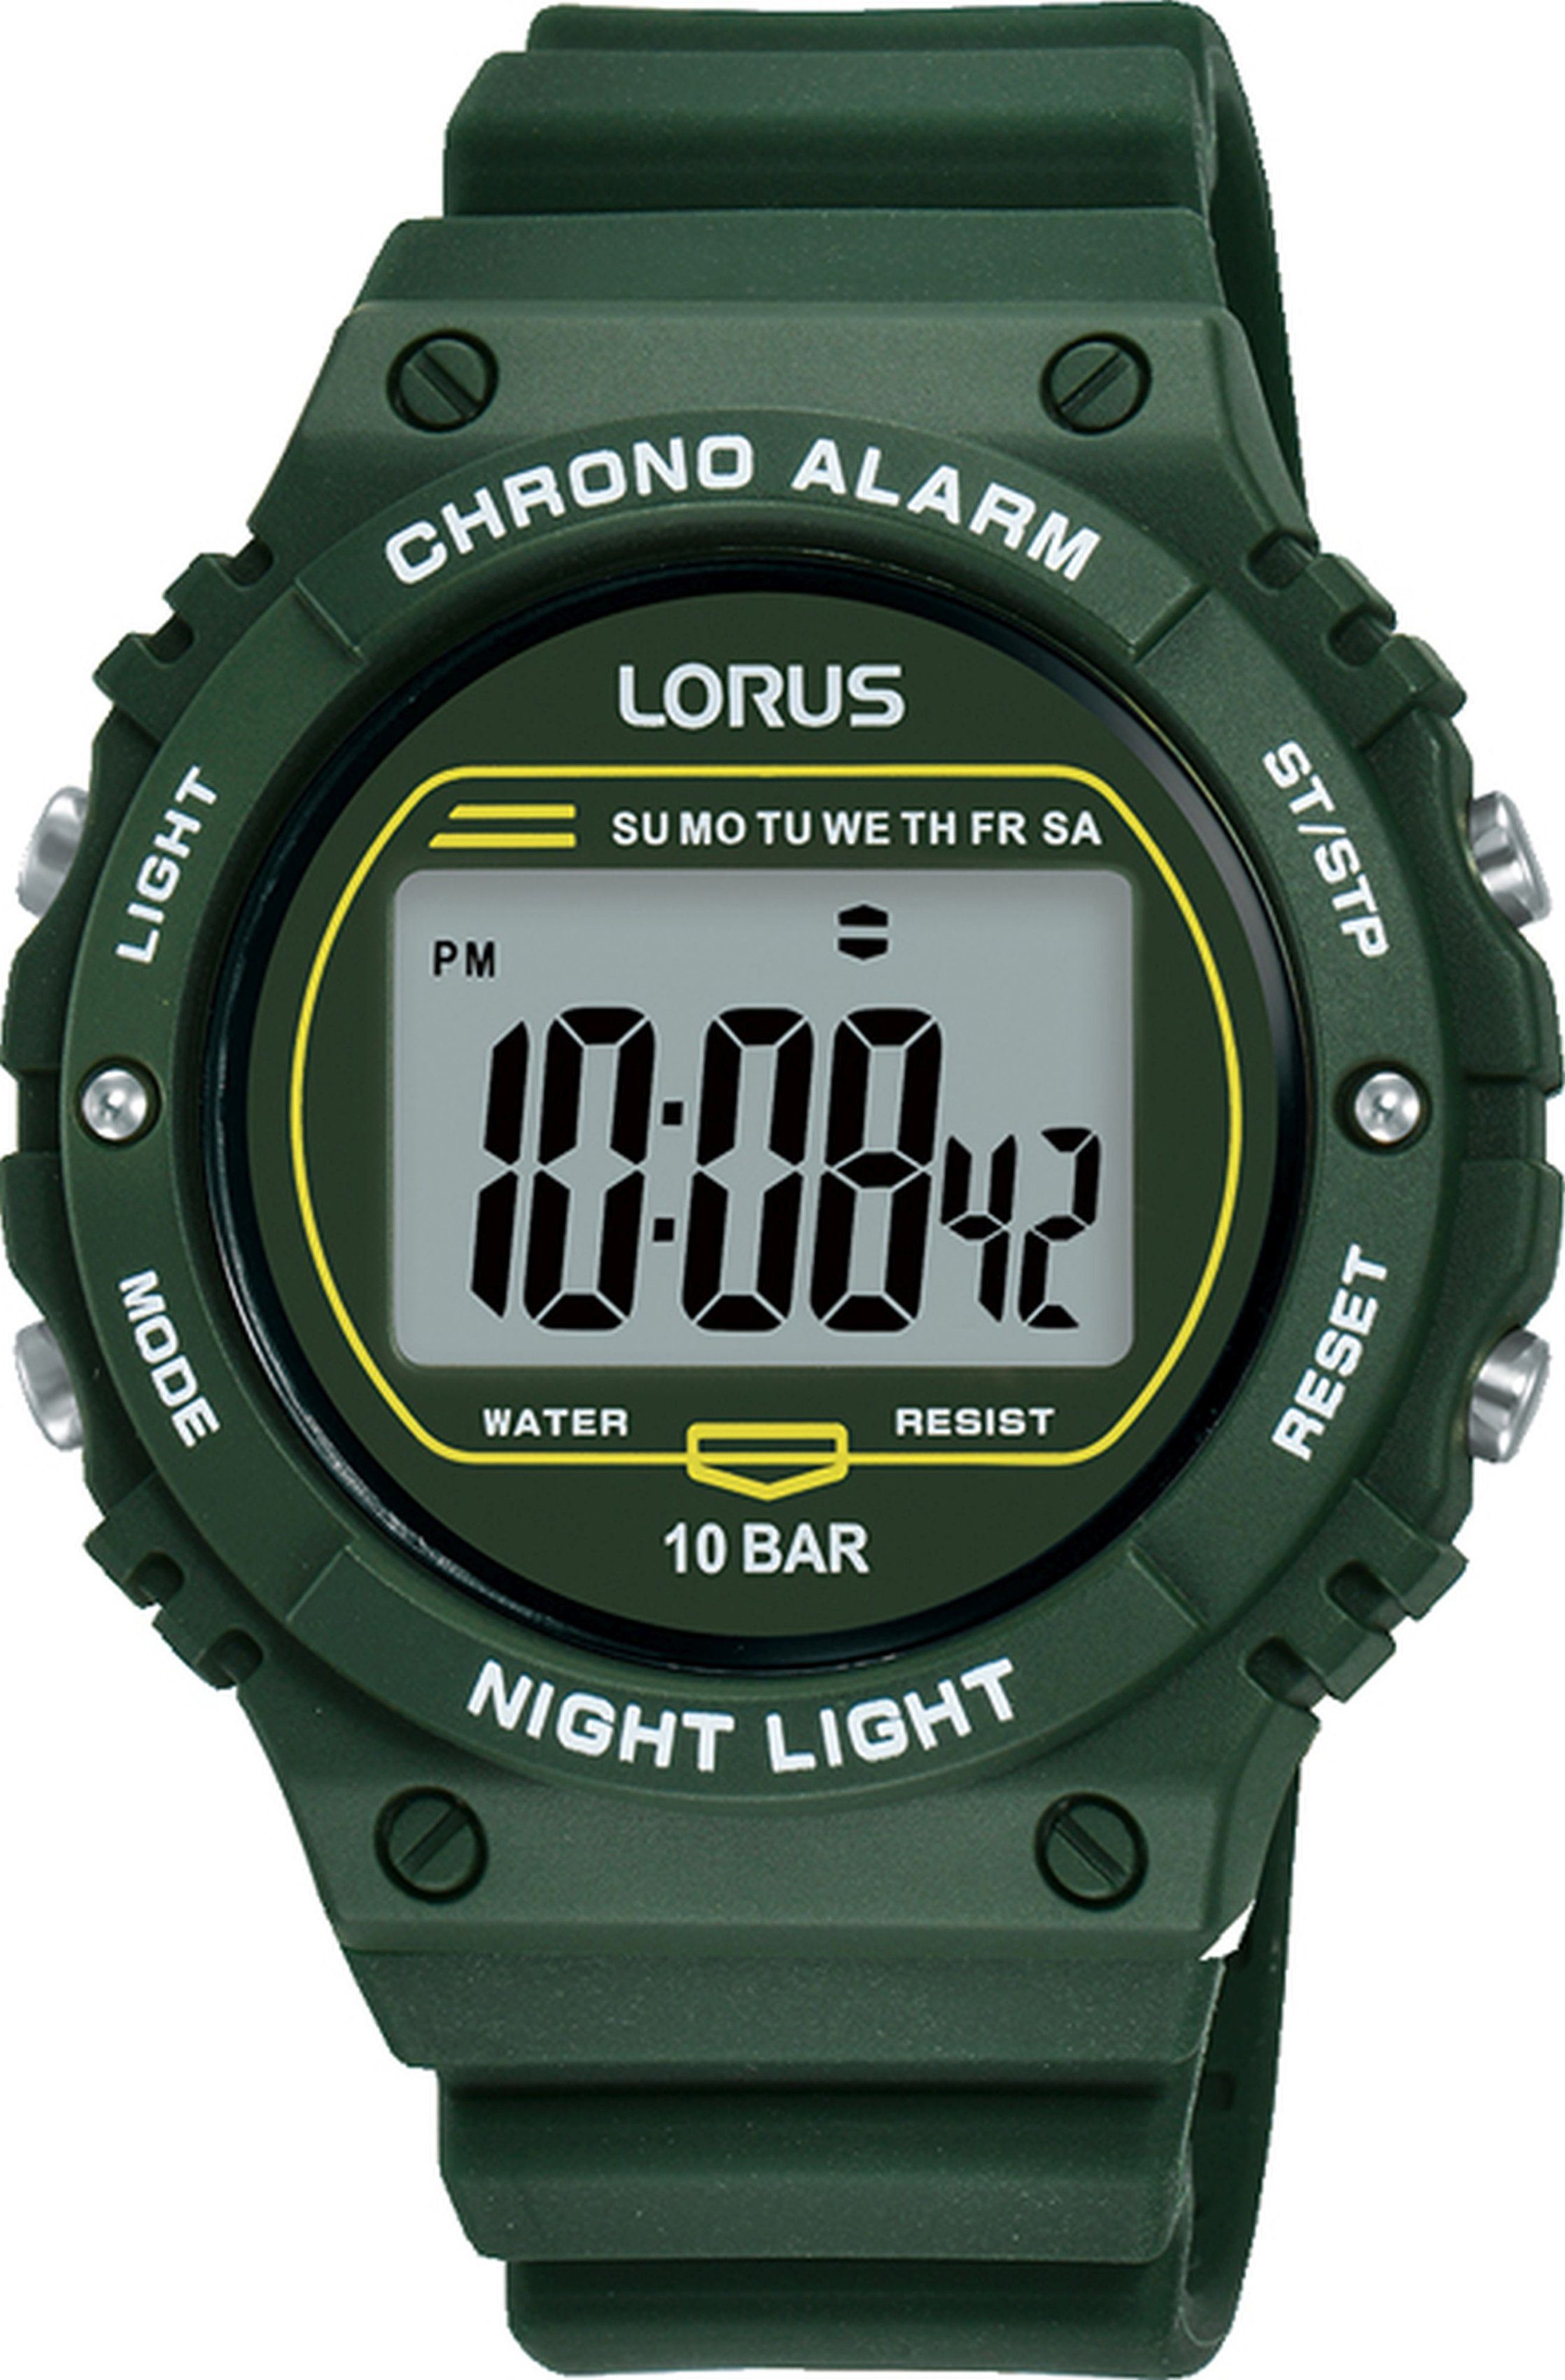 Anzeige Chronograph R2309PX9, mit digitaler LORUS